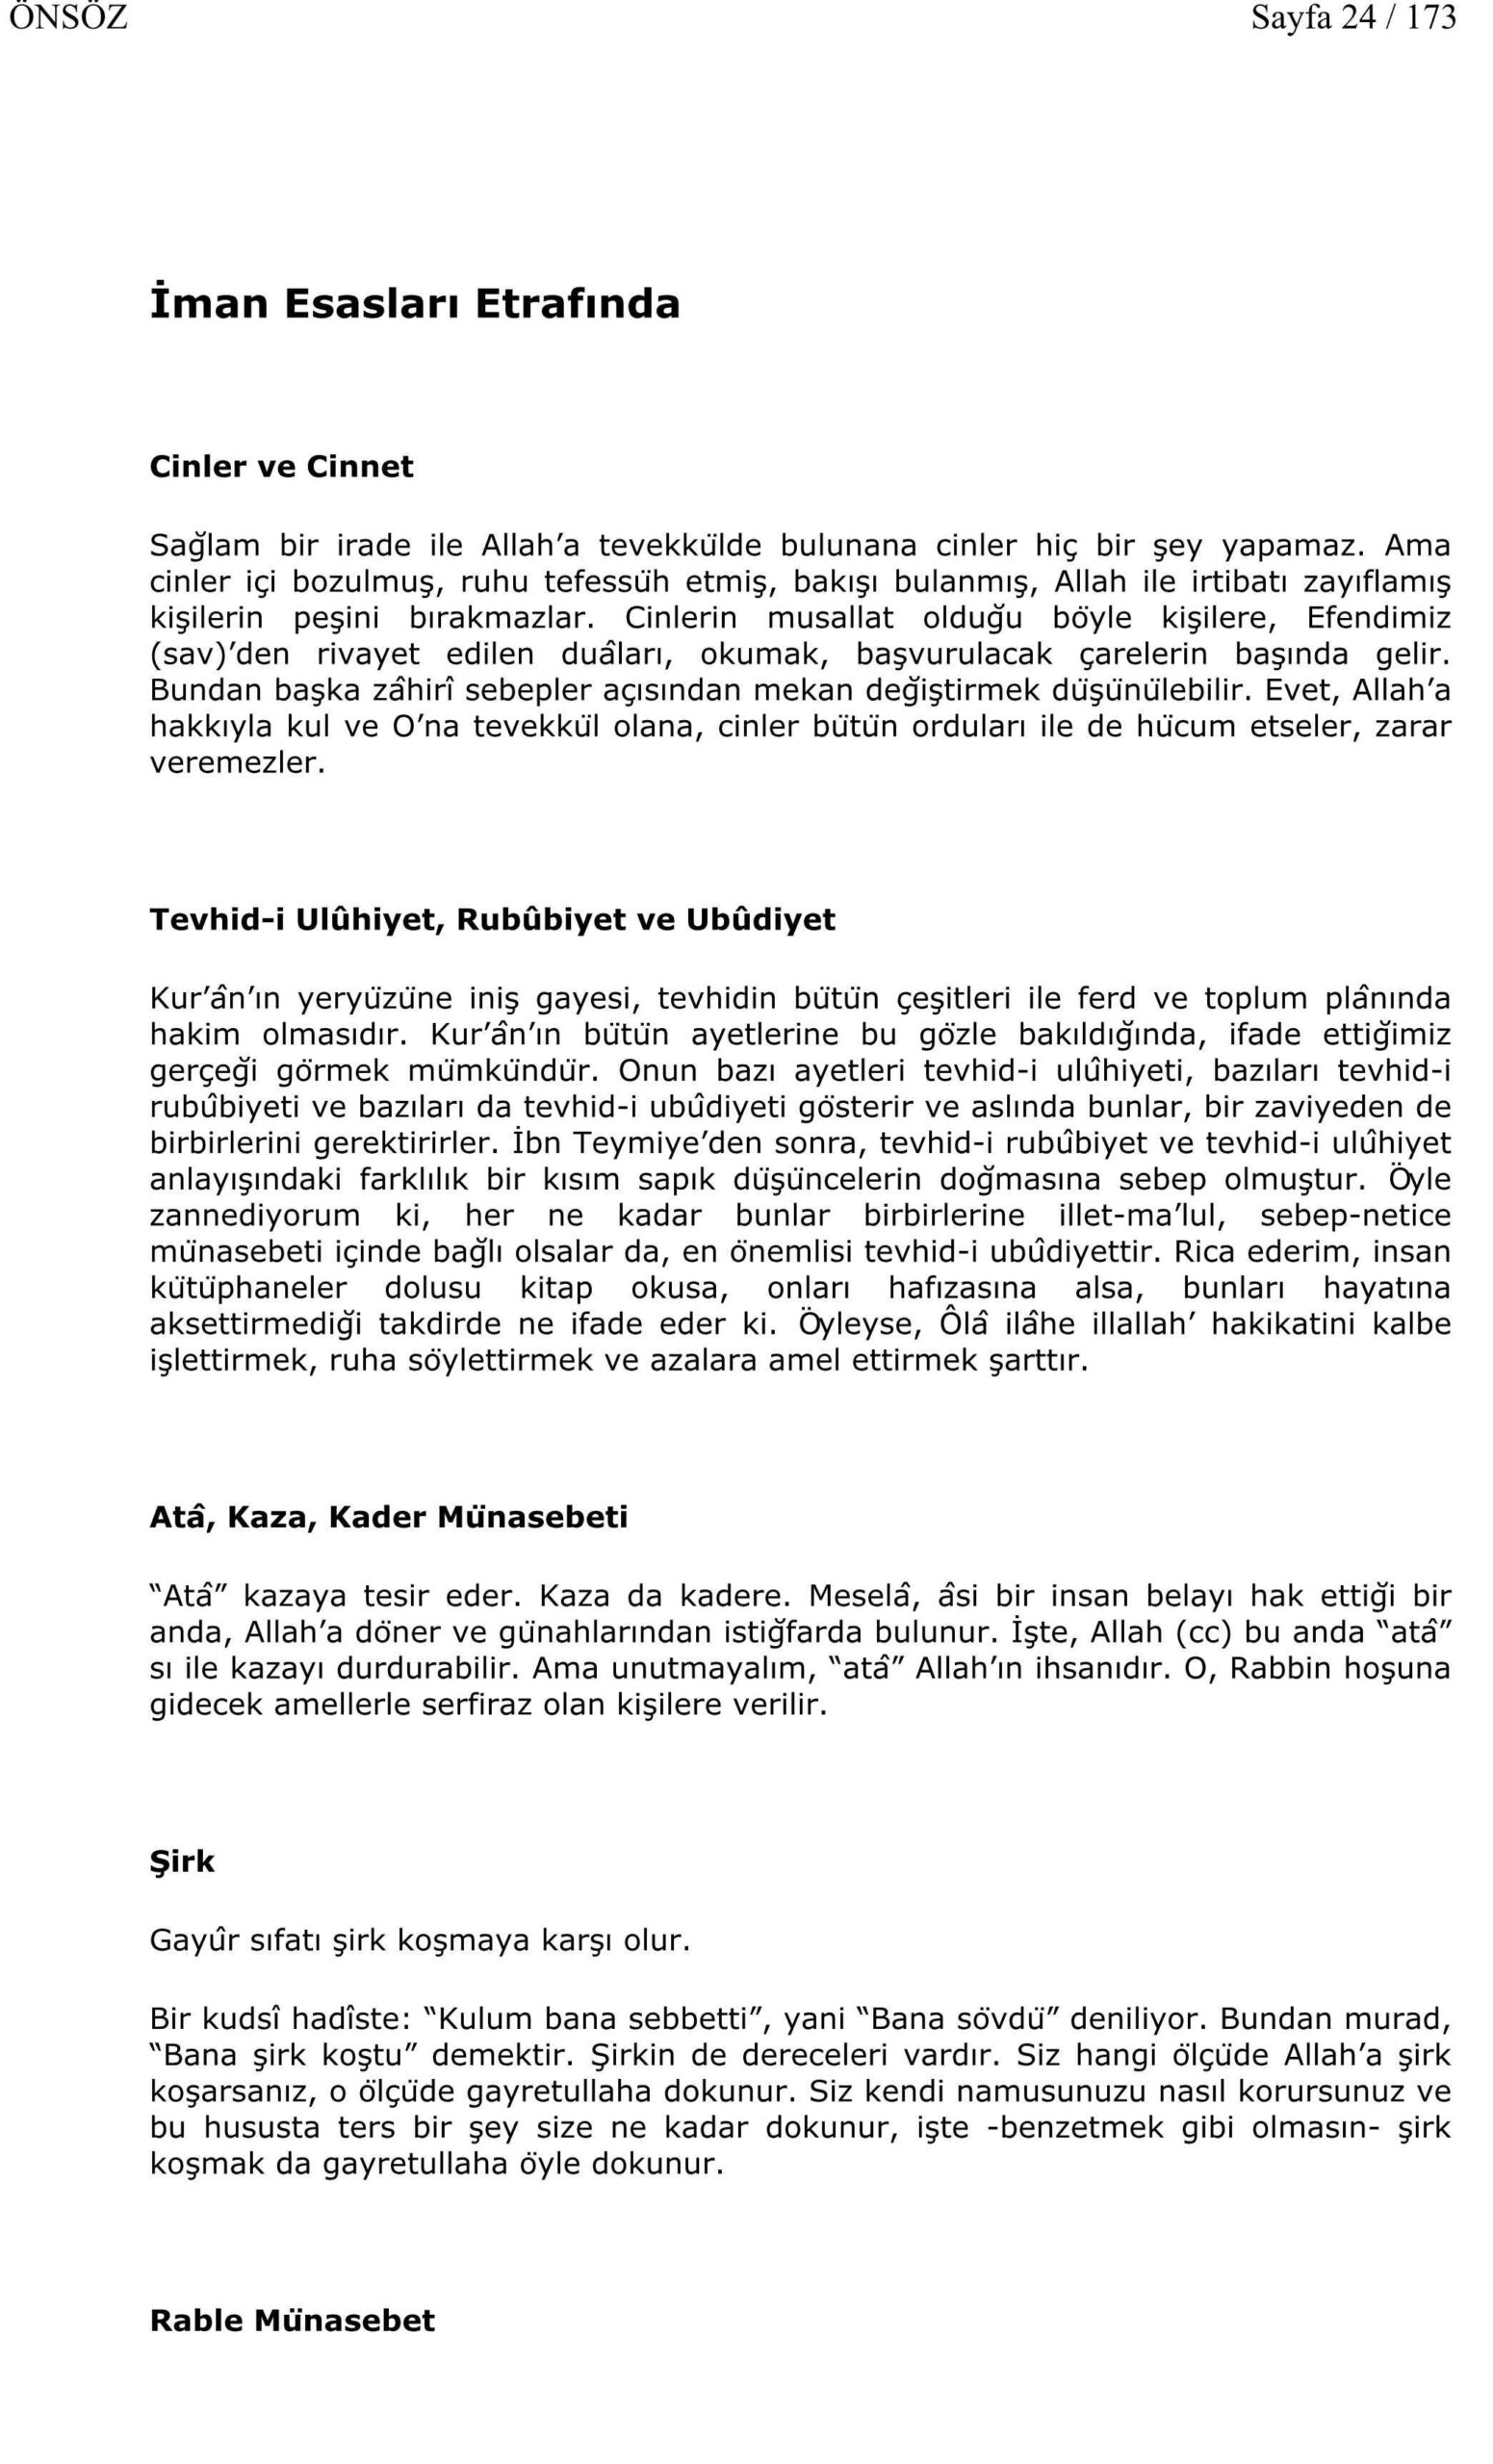 Fasildan Fasila - 1 - M F Gulen.pdf, 174-Sayfa 